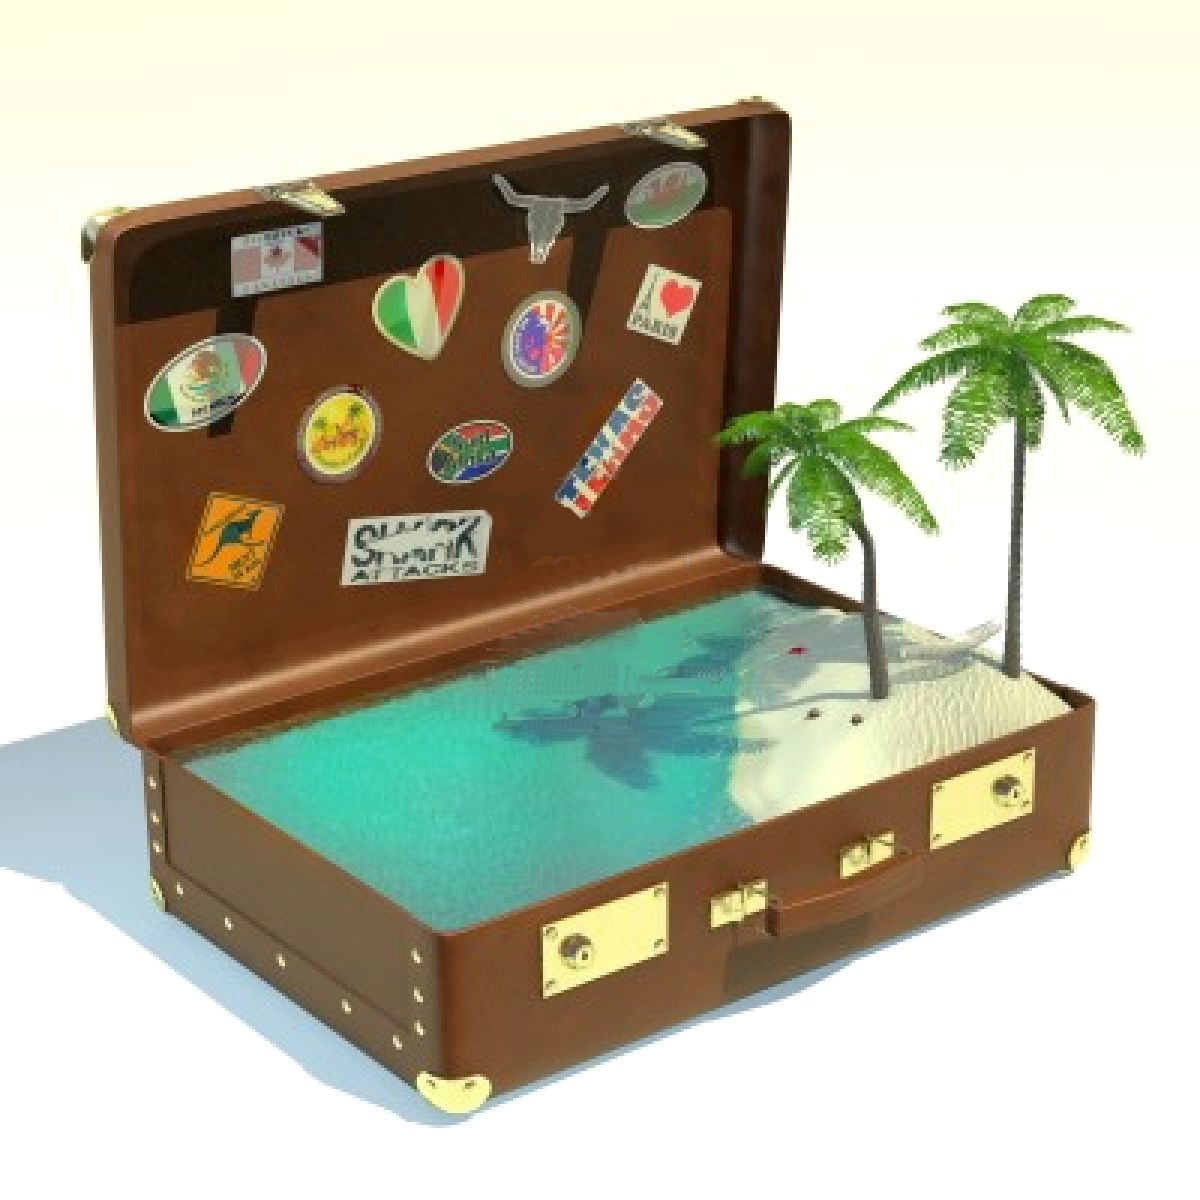 ¿Has preparado tu maleta para vacaciones?